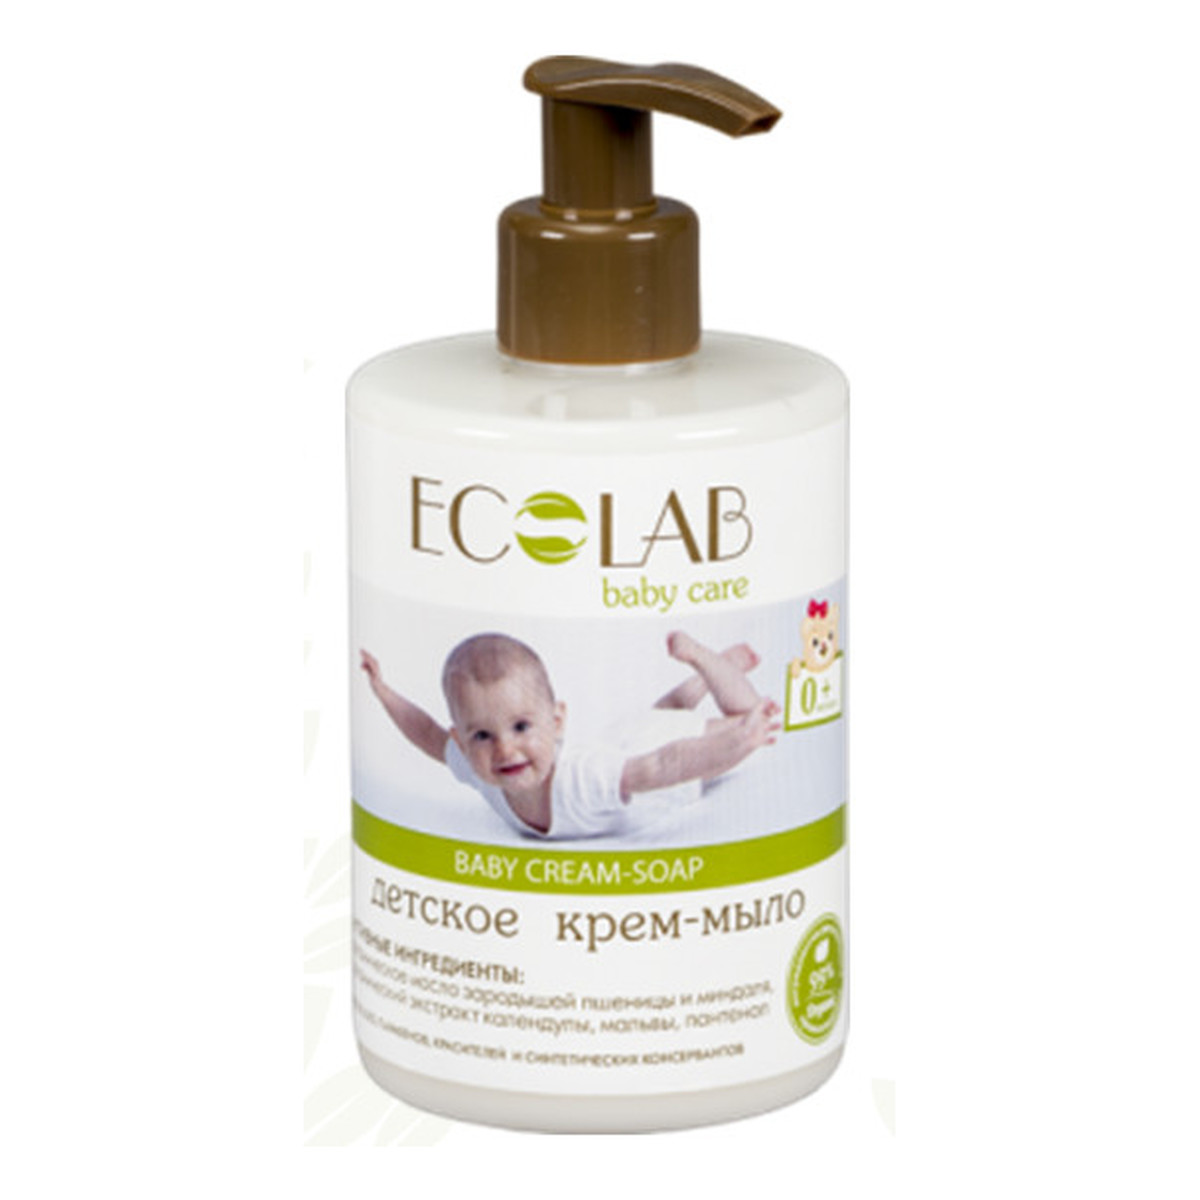 Ecolab Ec Laboratorie Baby Care Krem - Mydło Dla Dzieci Od 0+ 300ml